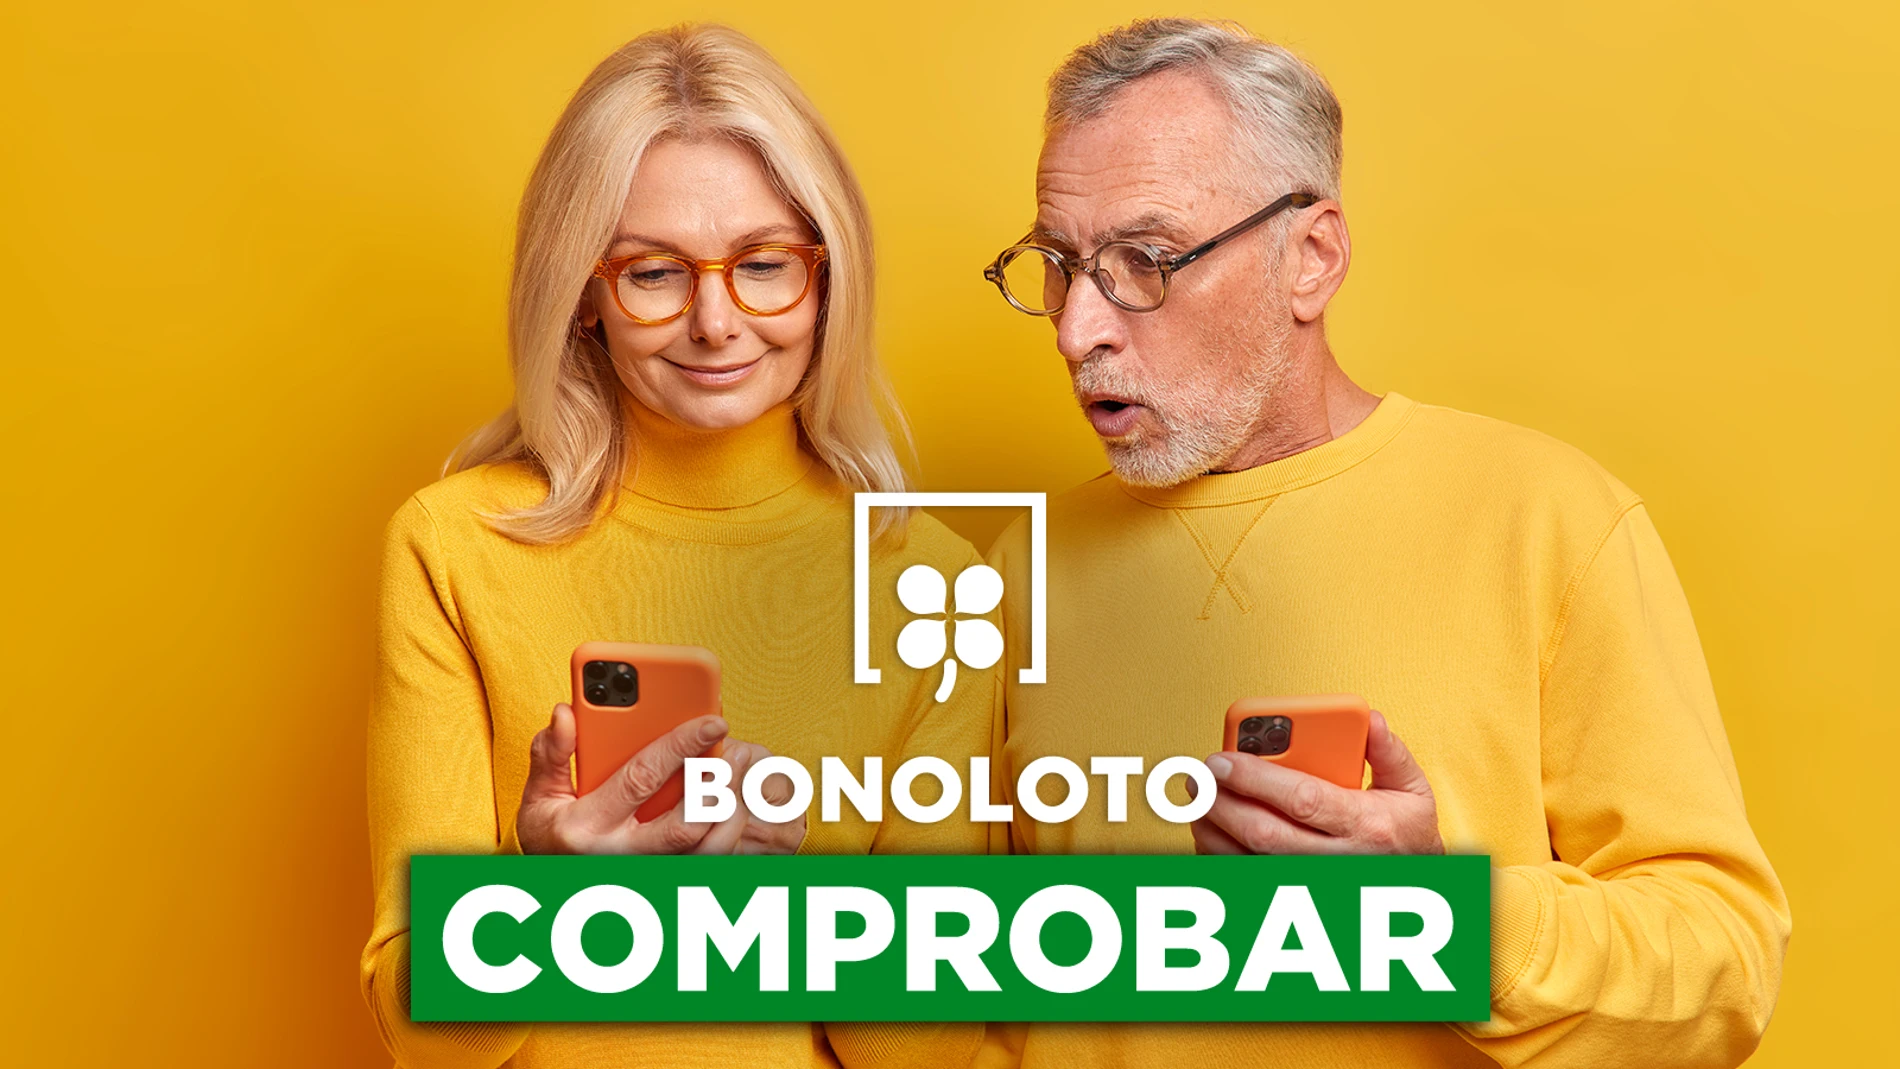 Bonoloto: comprobar hoy, viernes 10 de junio de 2022